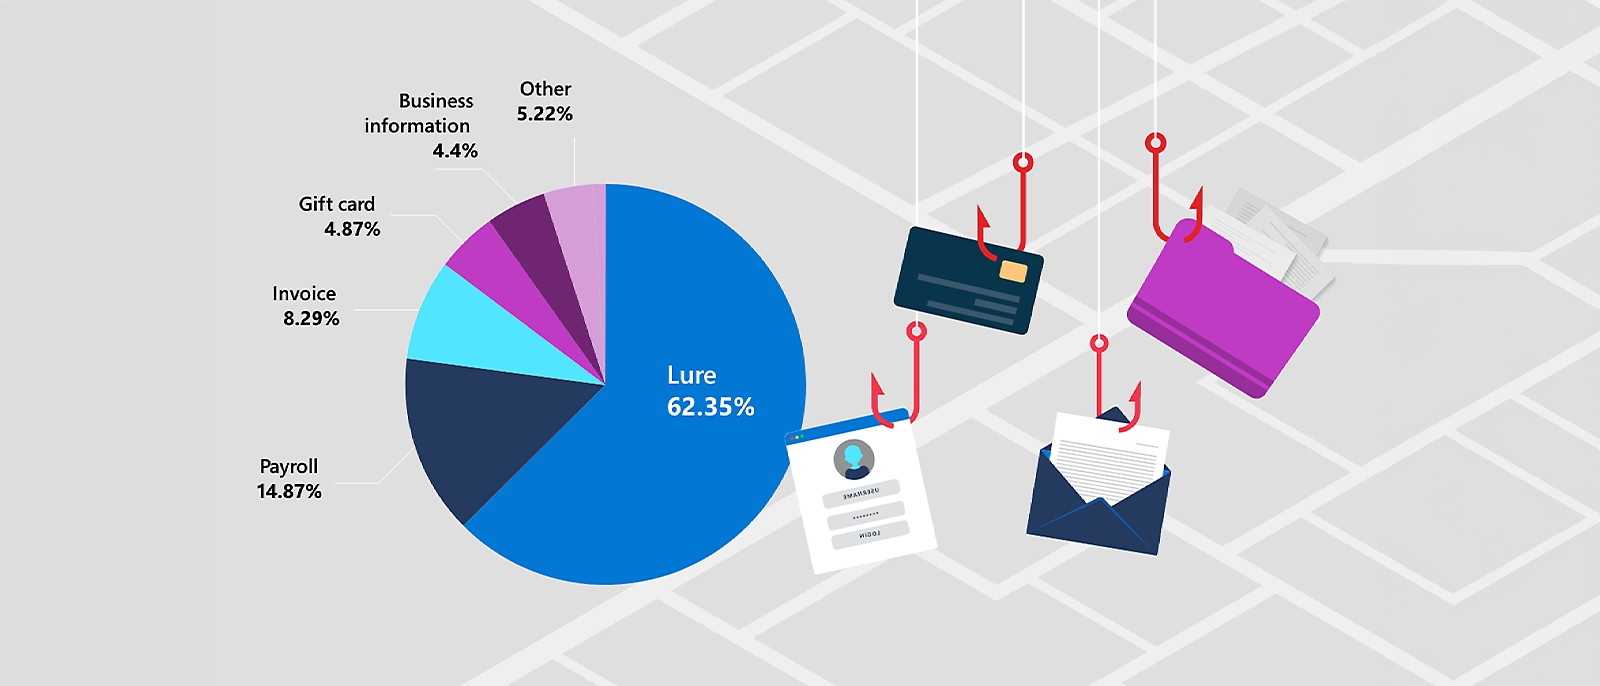 Кръгова диаграма, показваща процентното разпределение на различните видове фишинг имейли, използвани при атаки за компрометиране на бизнес електронна поща. Най-разпространеният тип е примамката - 62,35%, следван от заплатите (14,87%), фактурата (8,29%), ваучер за подарък (4,87%), бизнес информацията (4,4%) и други (5,22%).